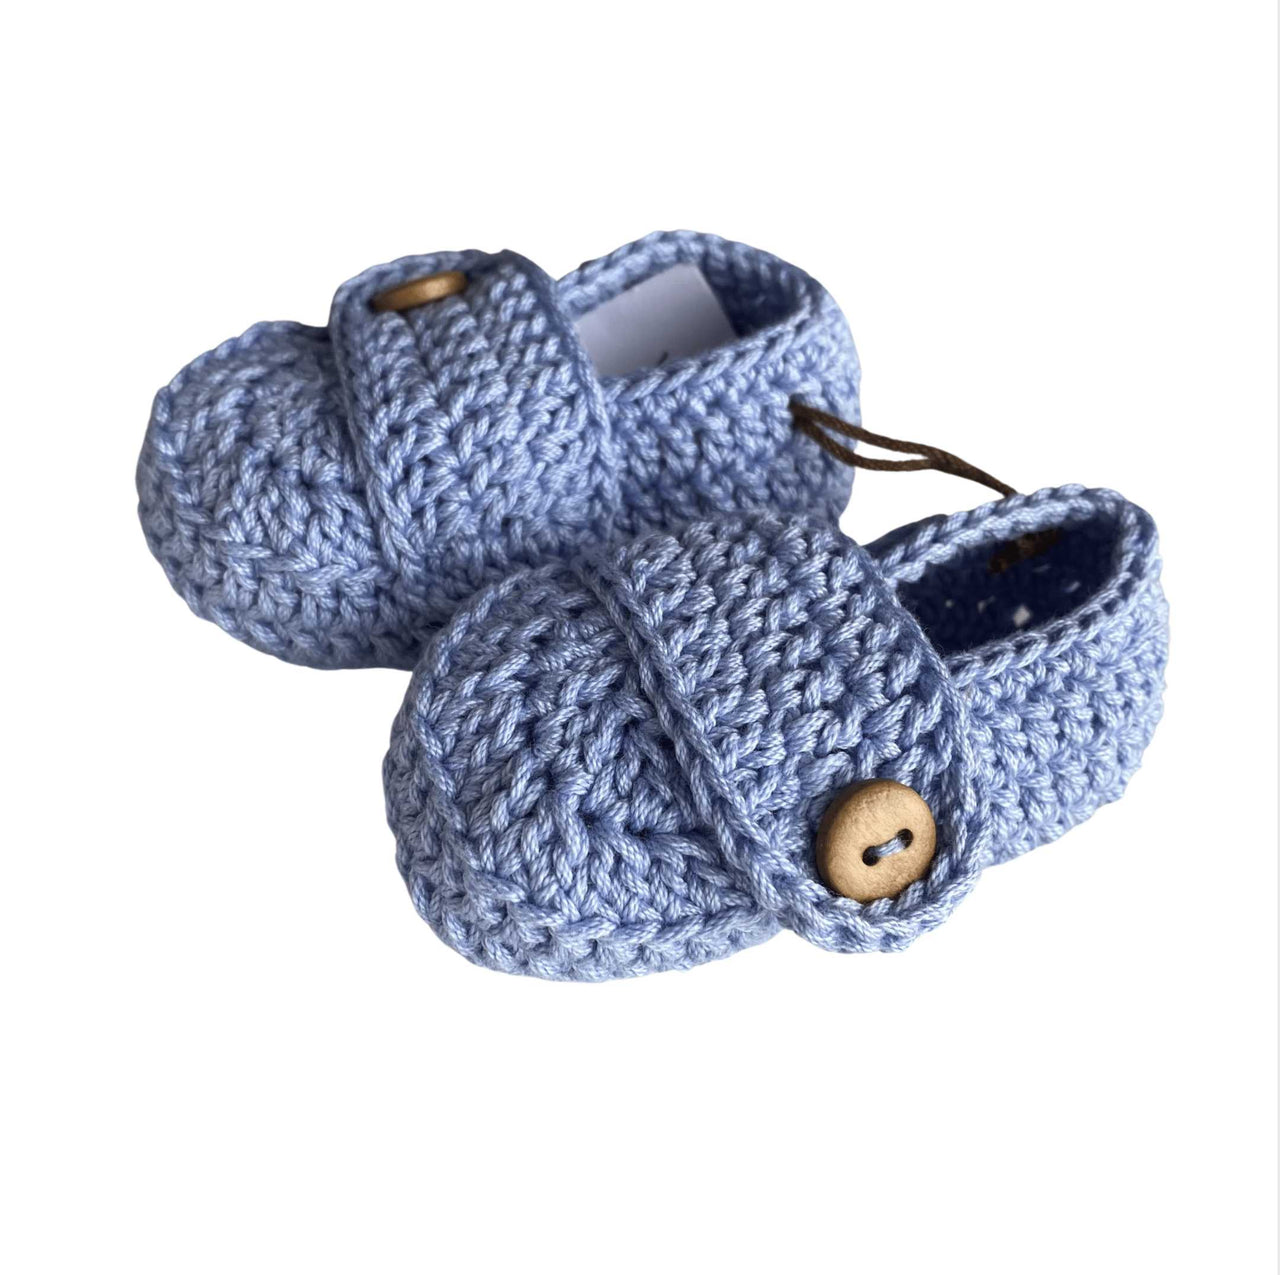 Mocasines Tejidos Crochet Azul % elbauldecleo %